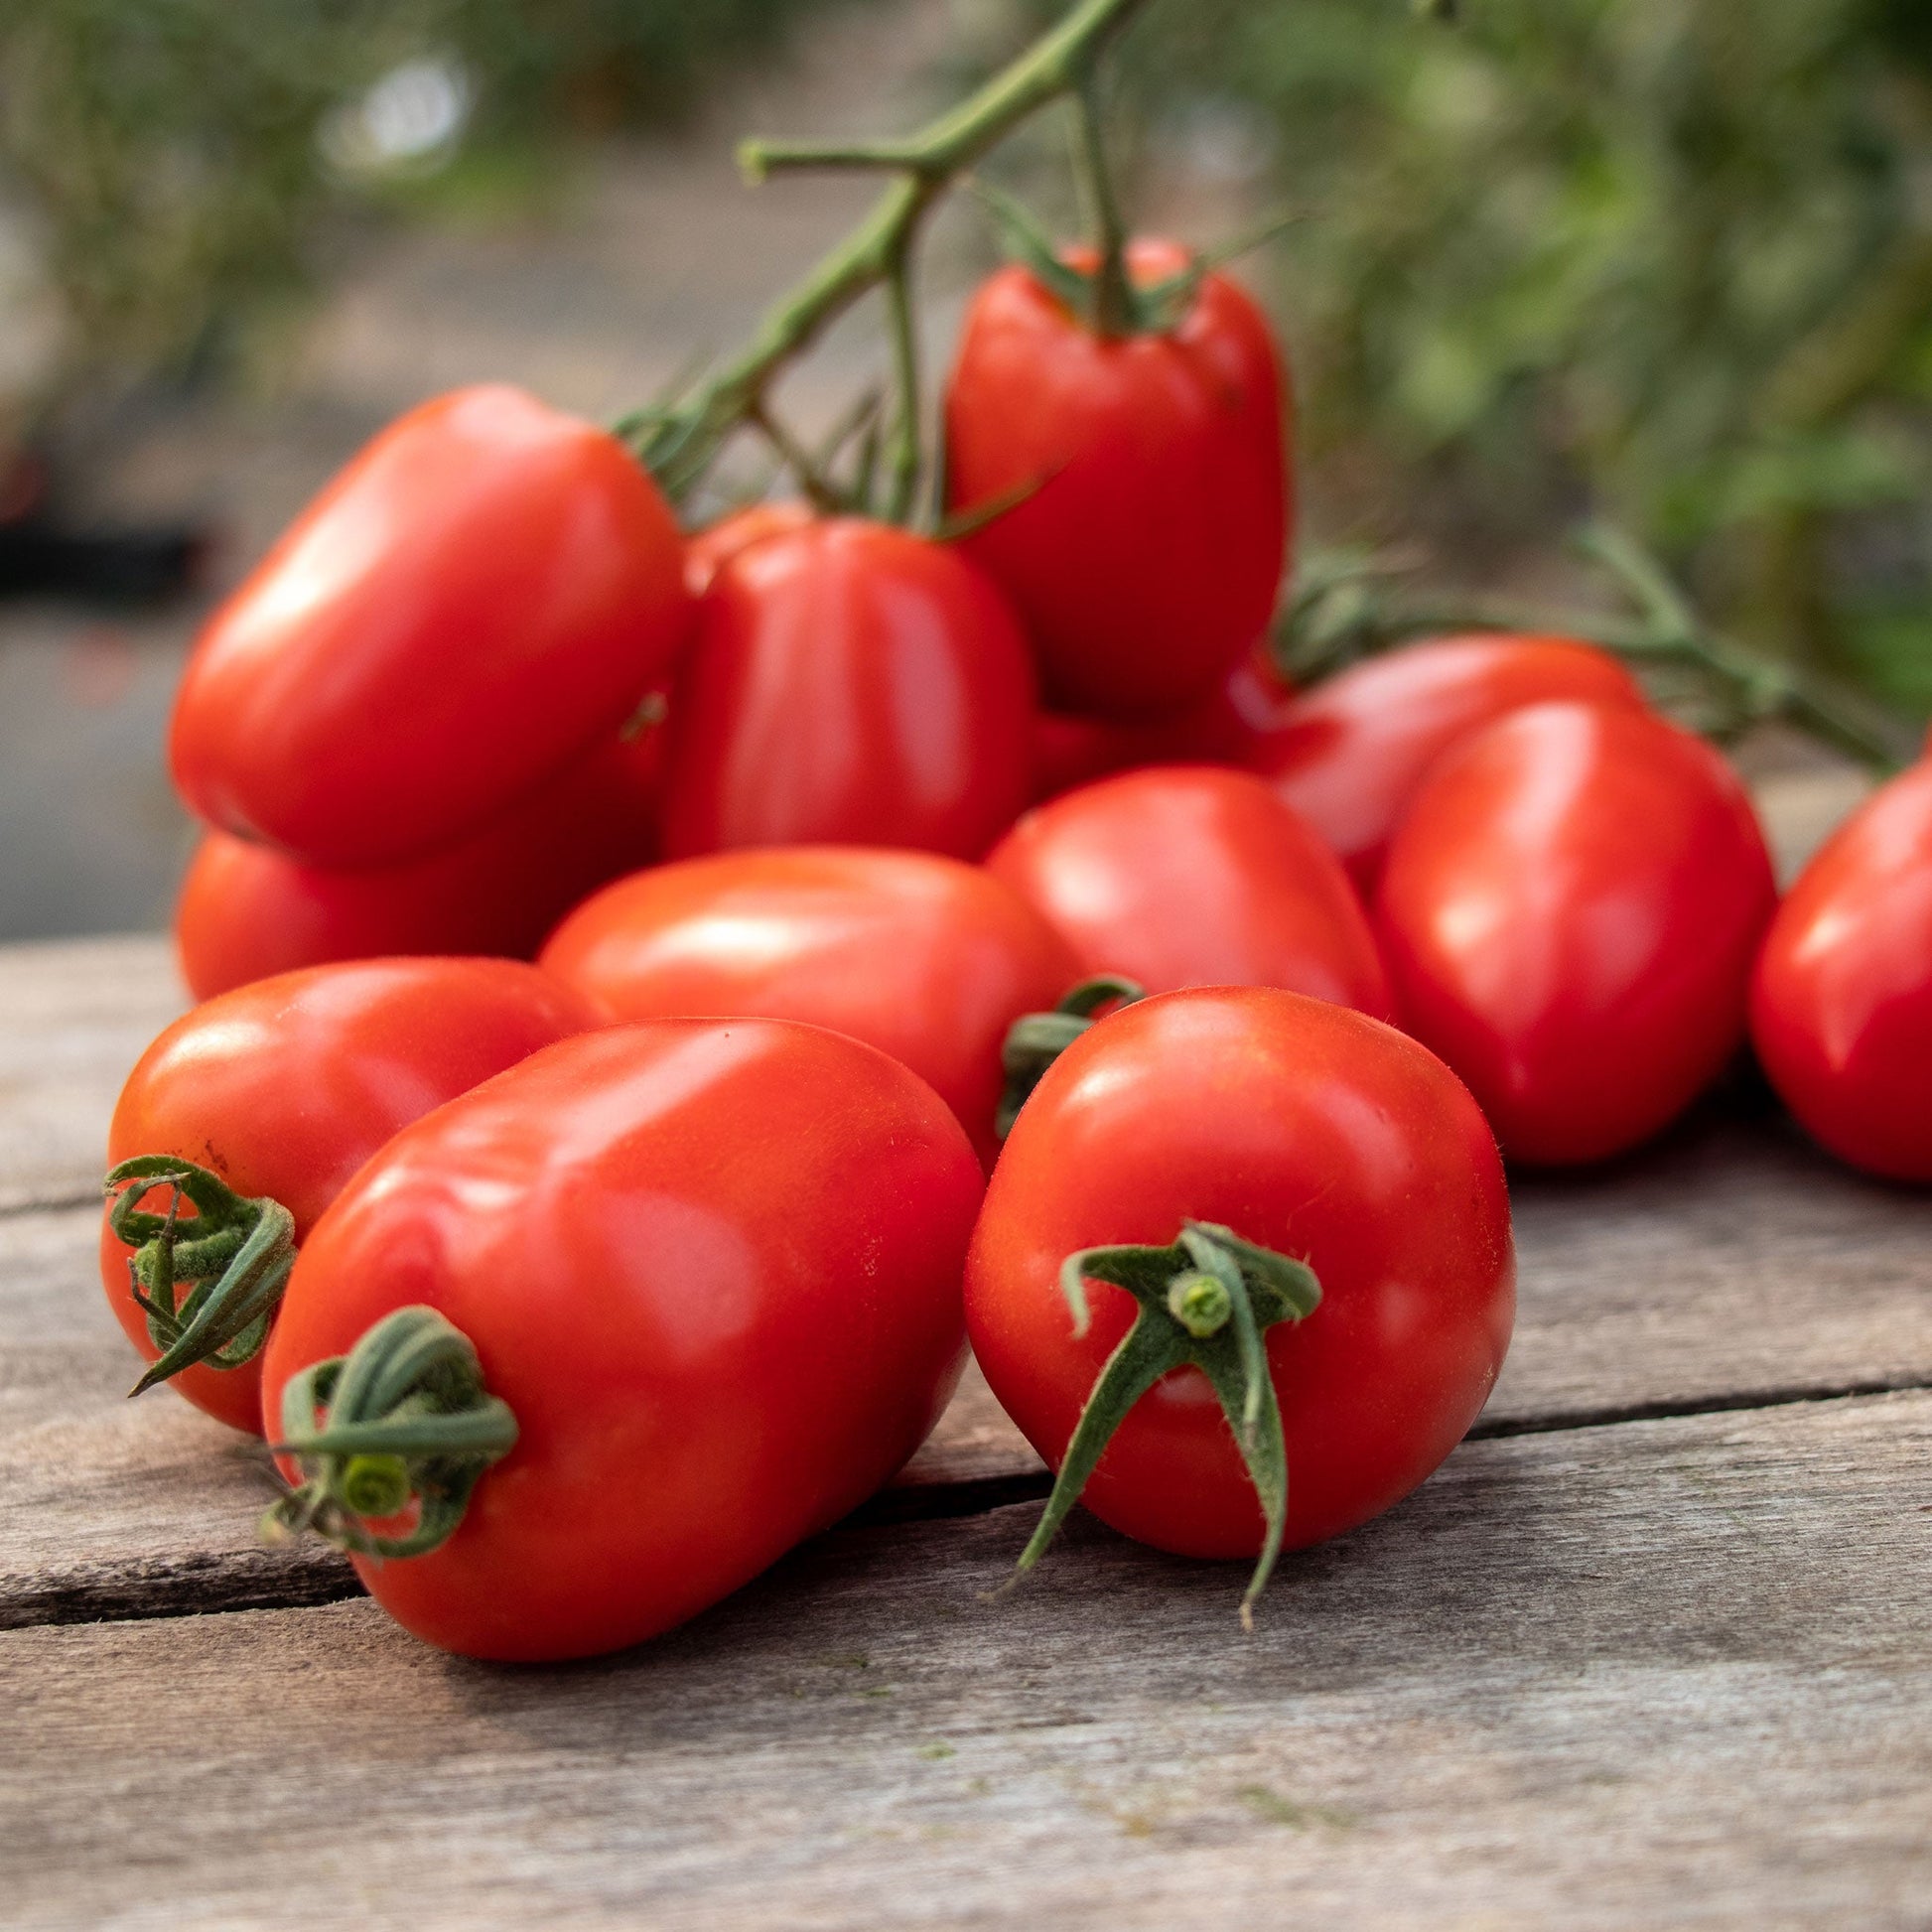 tomato trutti frutti paprika f1